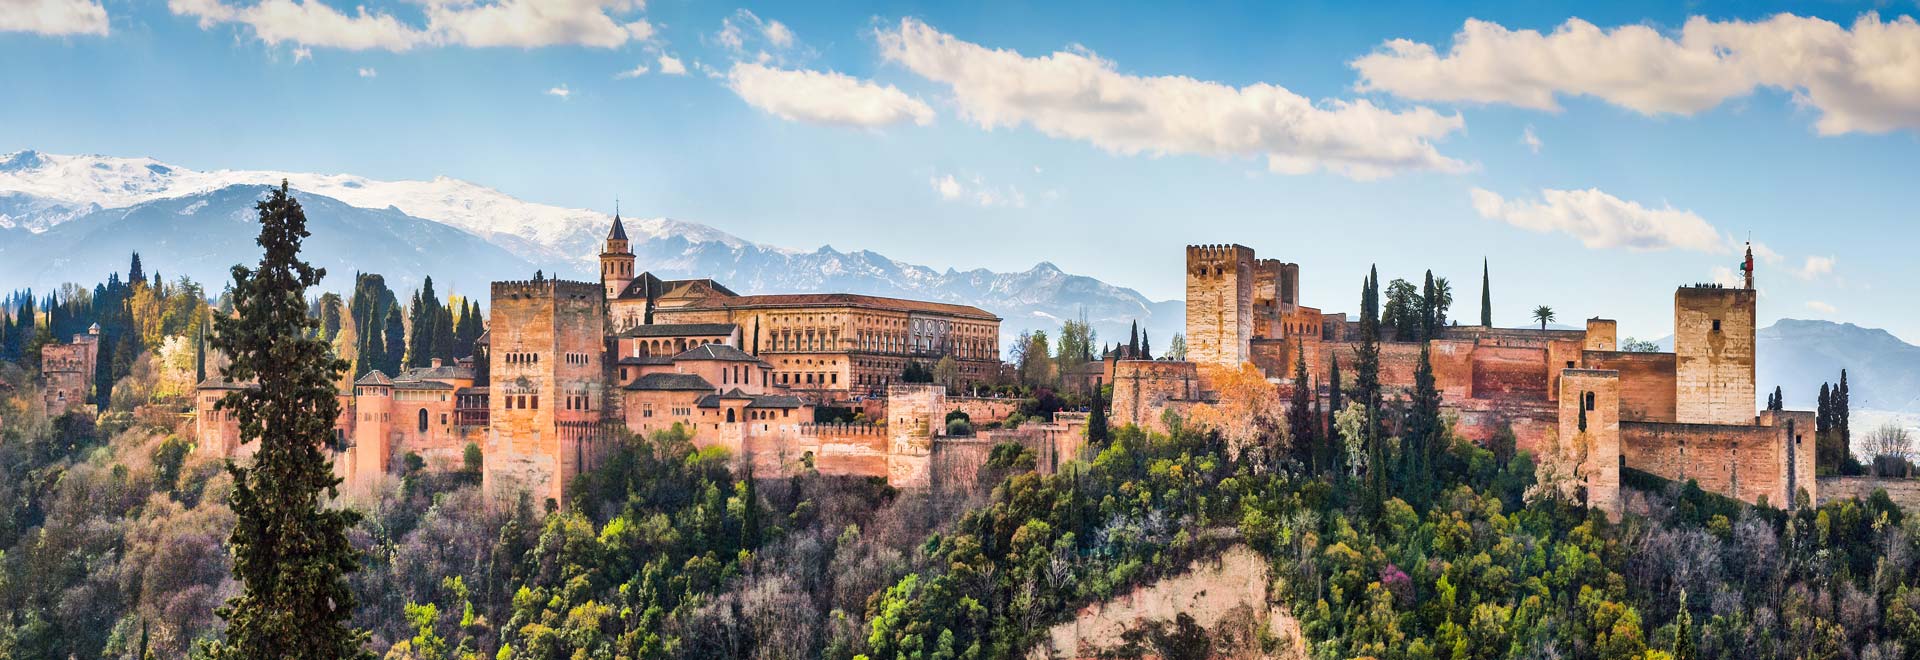 Europe TM Spain Inspiring Iberia Granada Alhambra MH